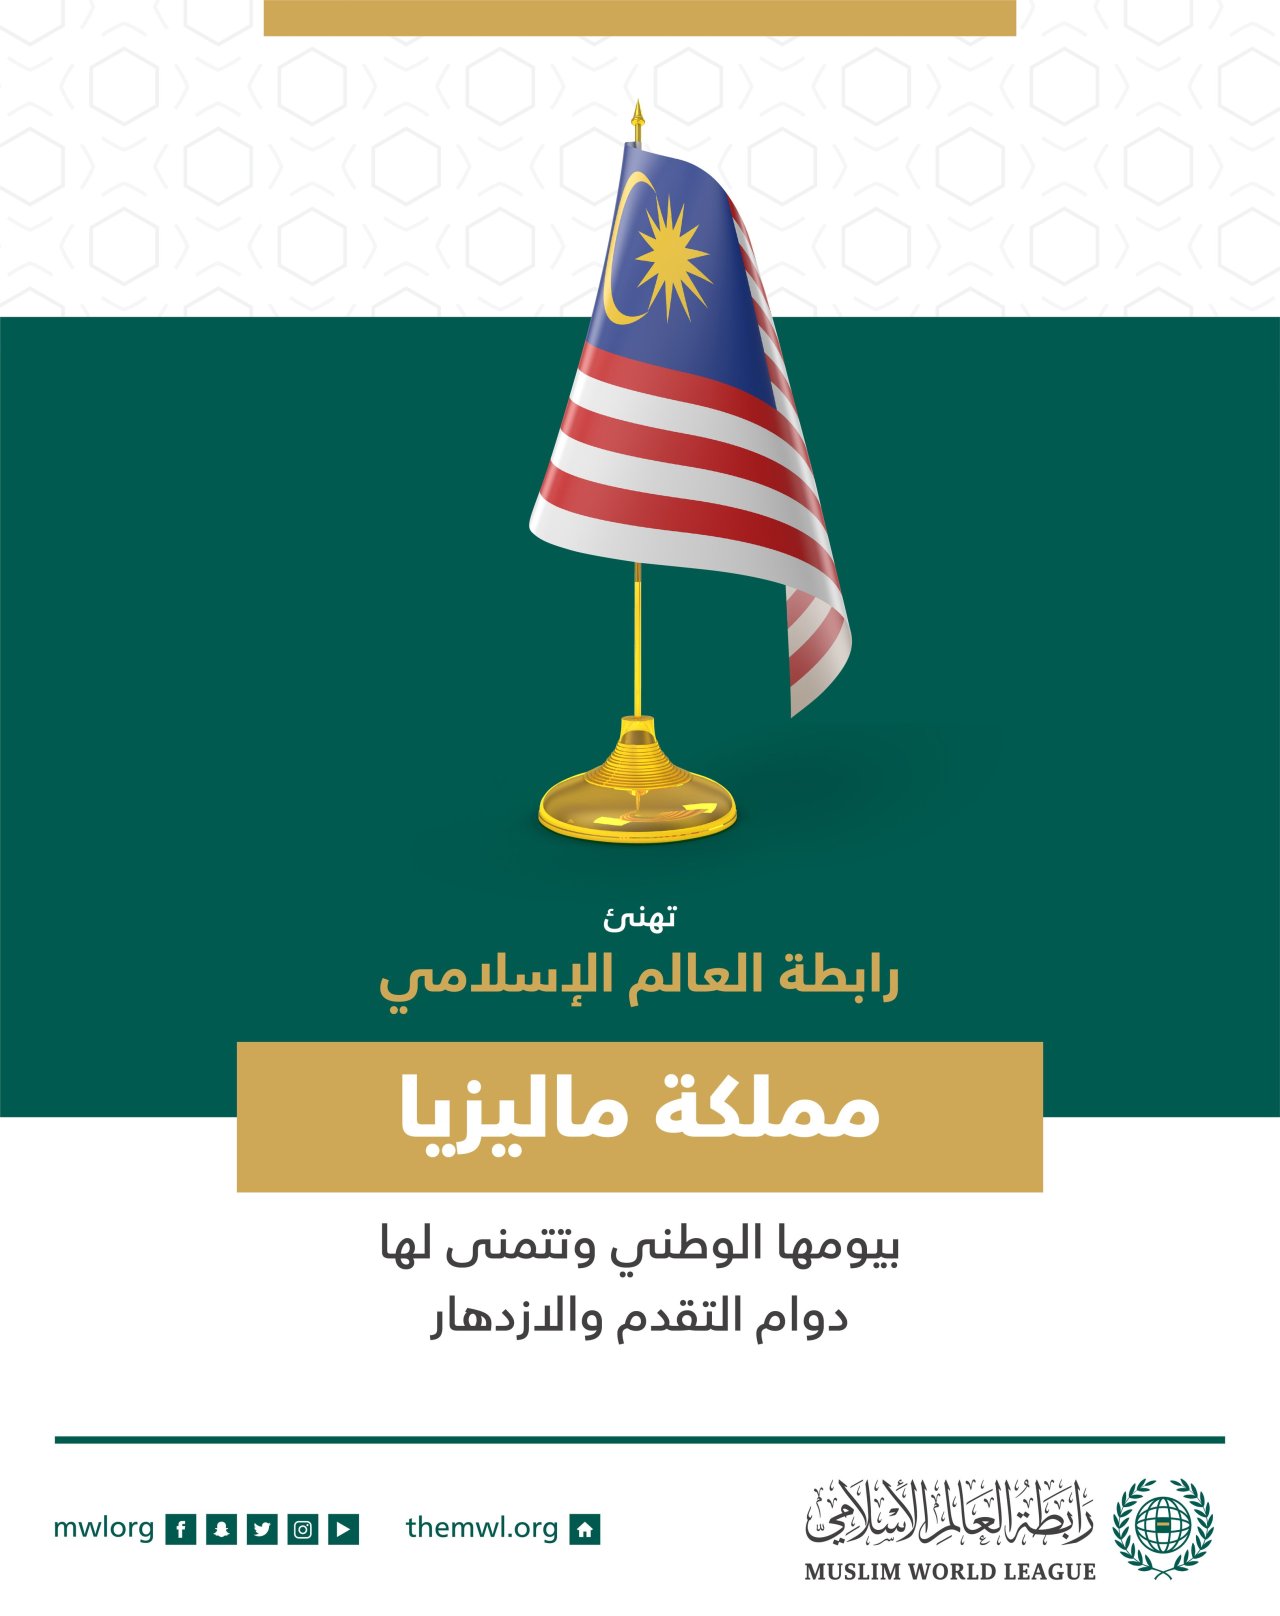 ‏تهنئ رابطة العالم الإسلامي‬⁩ مملكة ماليزيا‬⁩ بذكرى يومها الوطني.